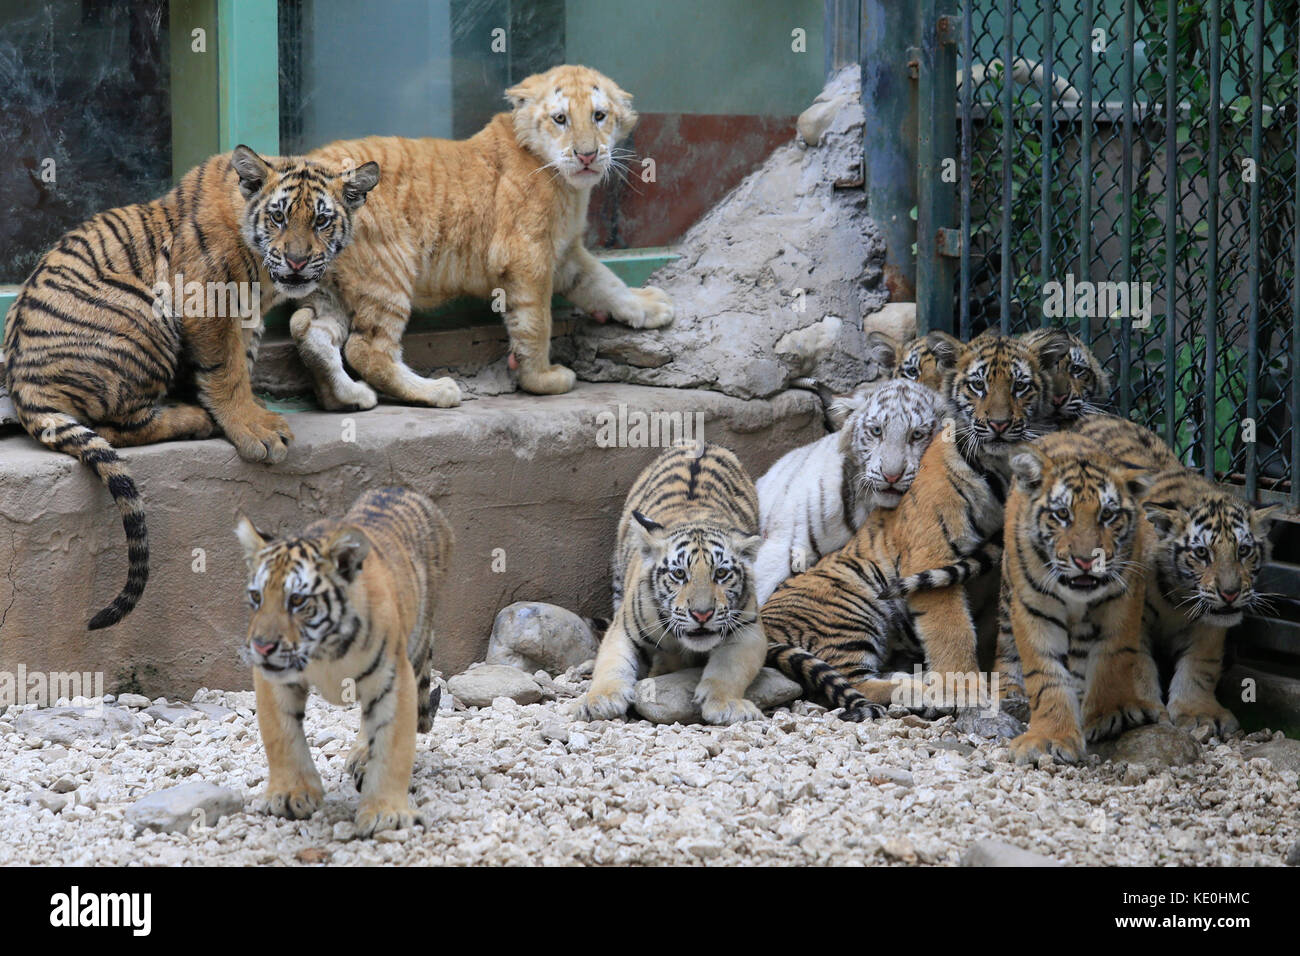 Jinan. 17 Okt, 2017. Foto auf okt. 17, 2017 zeigt Tiger cubs an der Wildlife Zoo in Jinan, der Hauptstadt der Provinz Shandong im Osten Chinas. Insgesamt 12 Tiger Cubs, die alle vier bis sechs Monate alt sind, mit der Öffentlichkeit hier Dienstag. Quelle: lyu chuanquan/Xinhua/alamy live News met Stockfoto